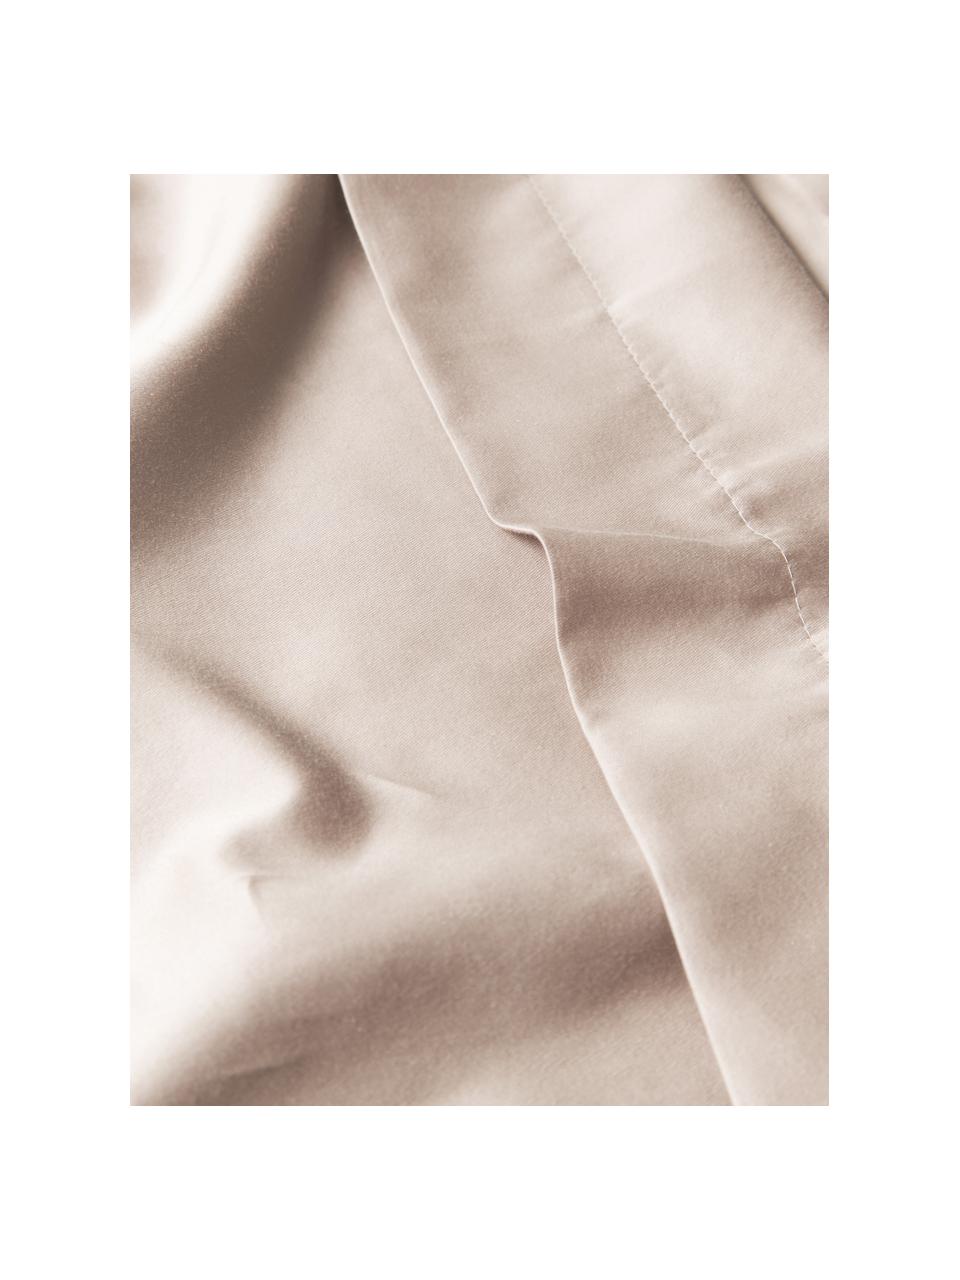 Saténové povlečení z organické bavlny s lemováním Premium, Růžová, 140 x 200 cm + 1 polštář 80 x 80 cm